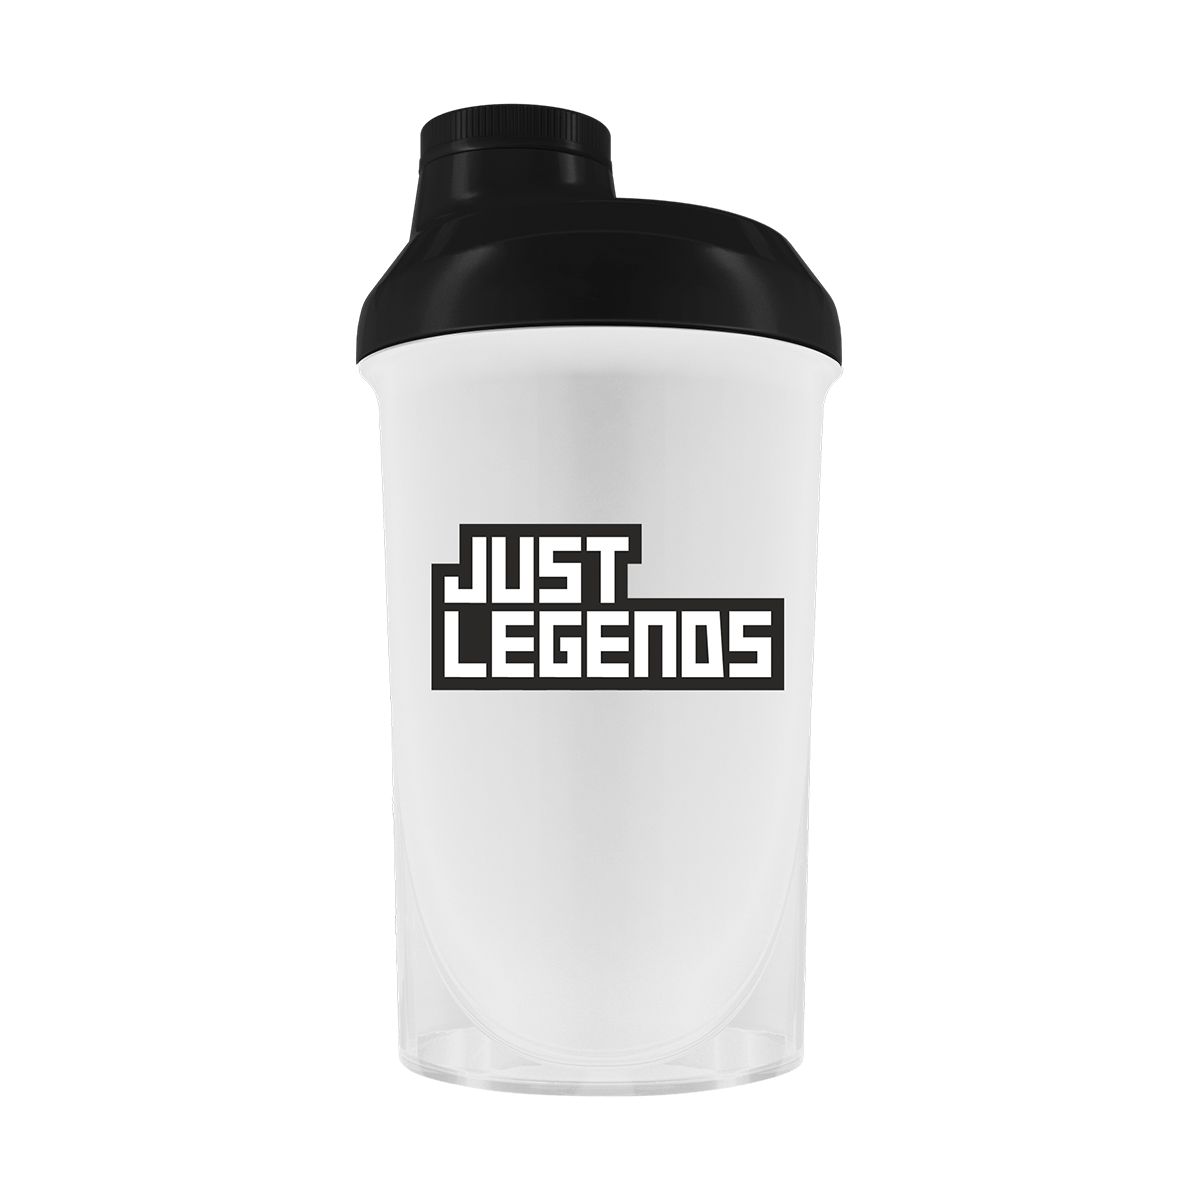 Just Legends Premium Shaker "Basic" | Funktionaler, veganer Shaker auf Pulverbasis ohne Zucker, mit wenig Kalorien, vielen Vitaminen und natürlichen Aromen.